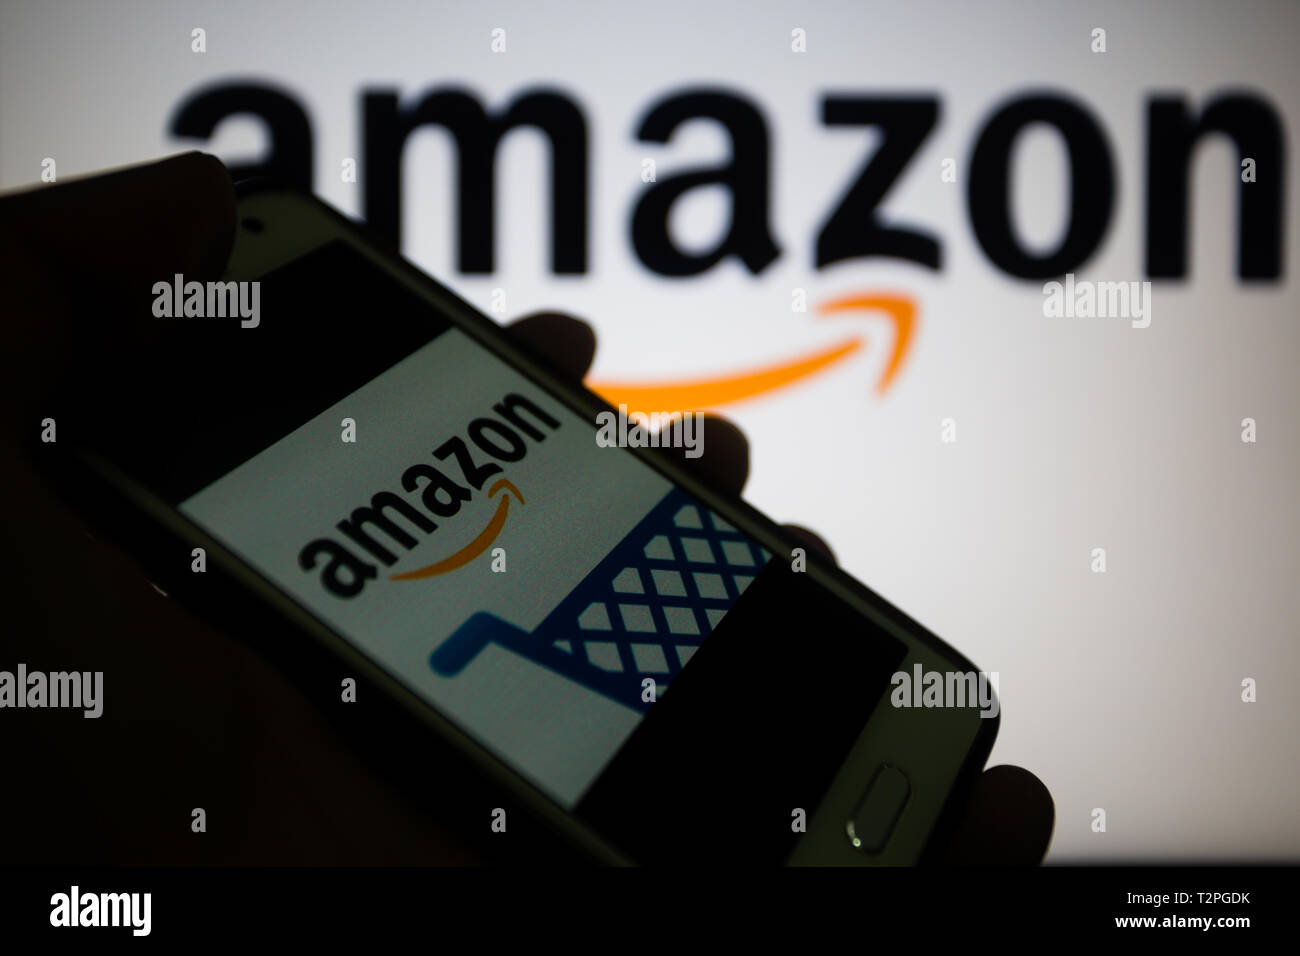 Amazon.com, multinationale américaine entreprise de technologie qui se concentre dans l'e-commerce, logo est affiché sur un écran de smartphone, le logo sur fond flou Banque D'Images